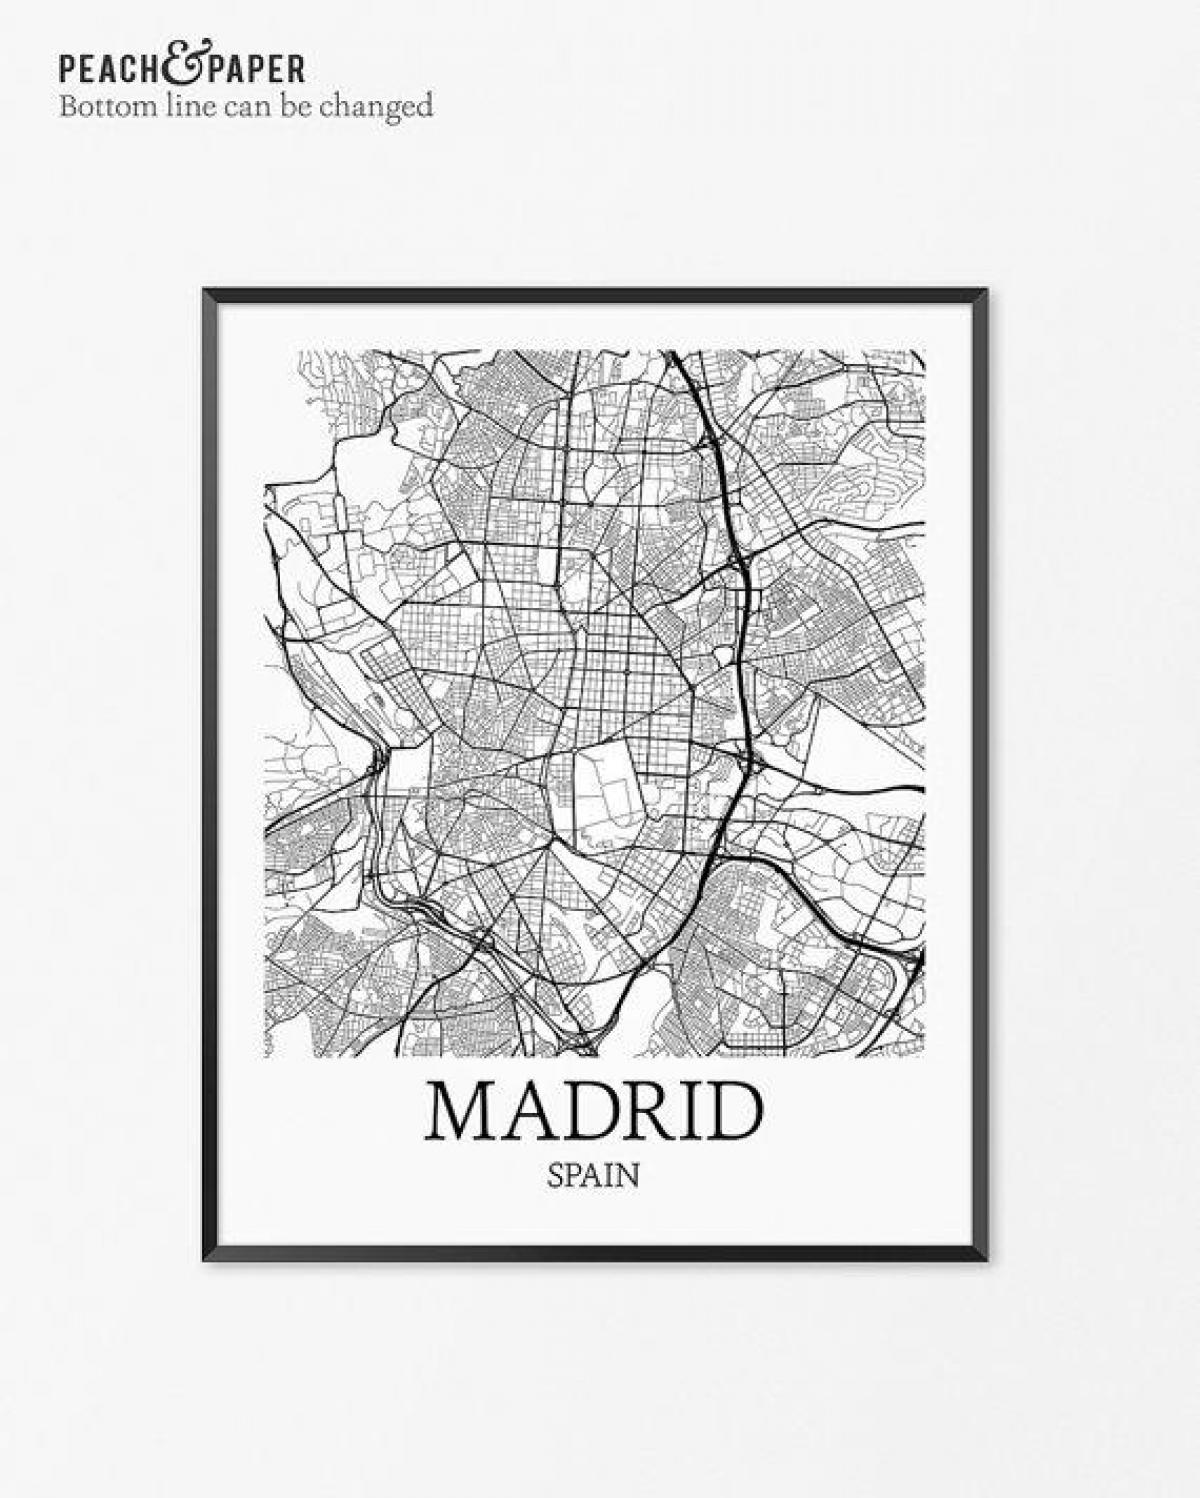 מפה של מדריד מפת פוסטר